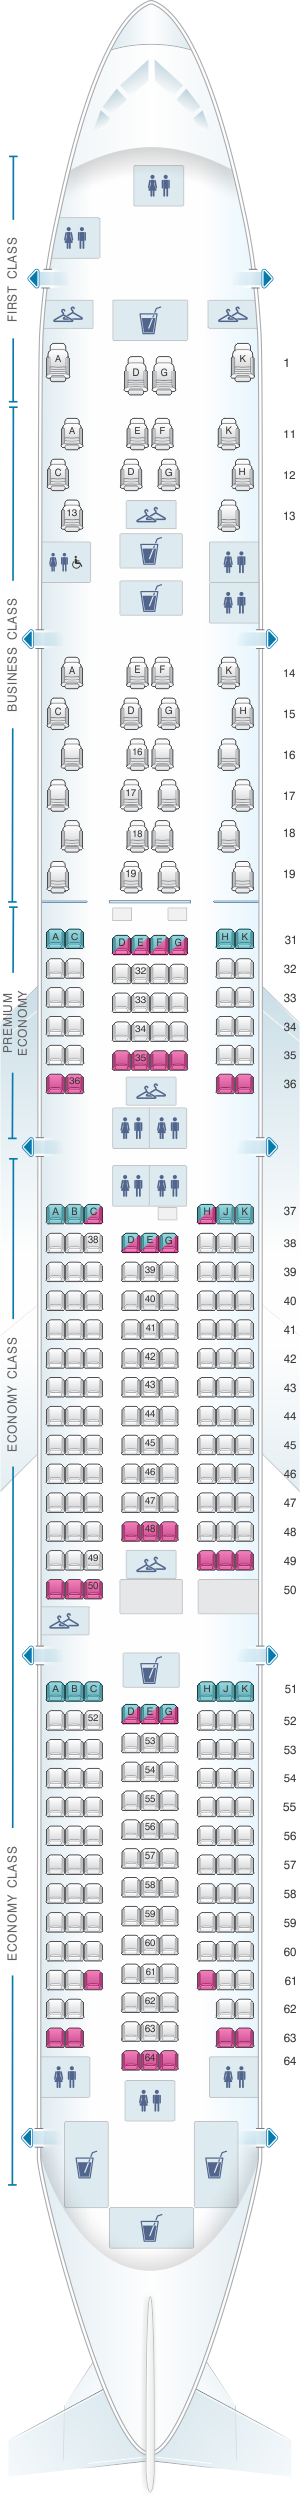 seat plan air china boeing 777 300er